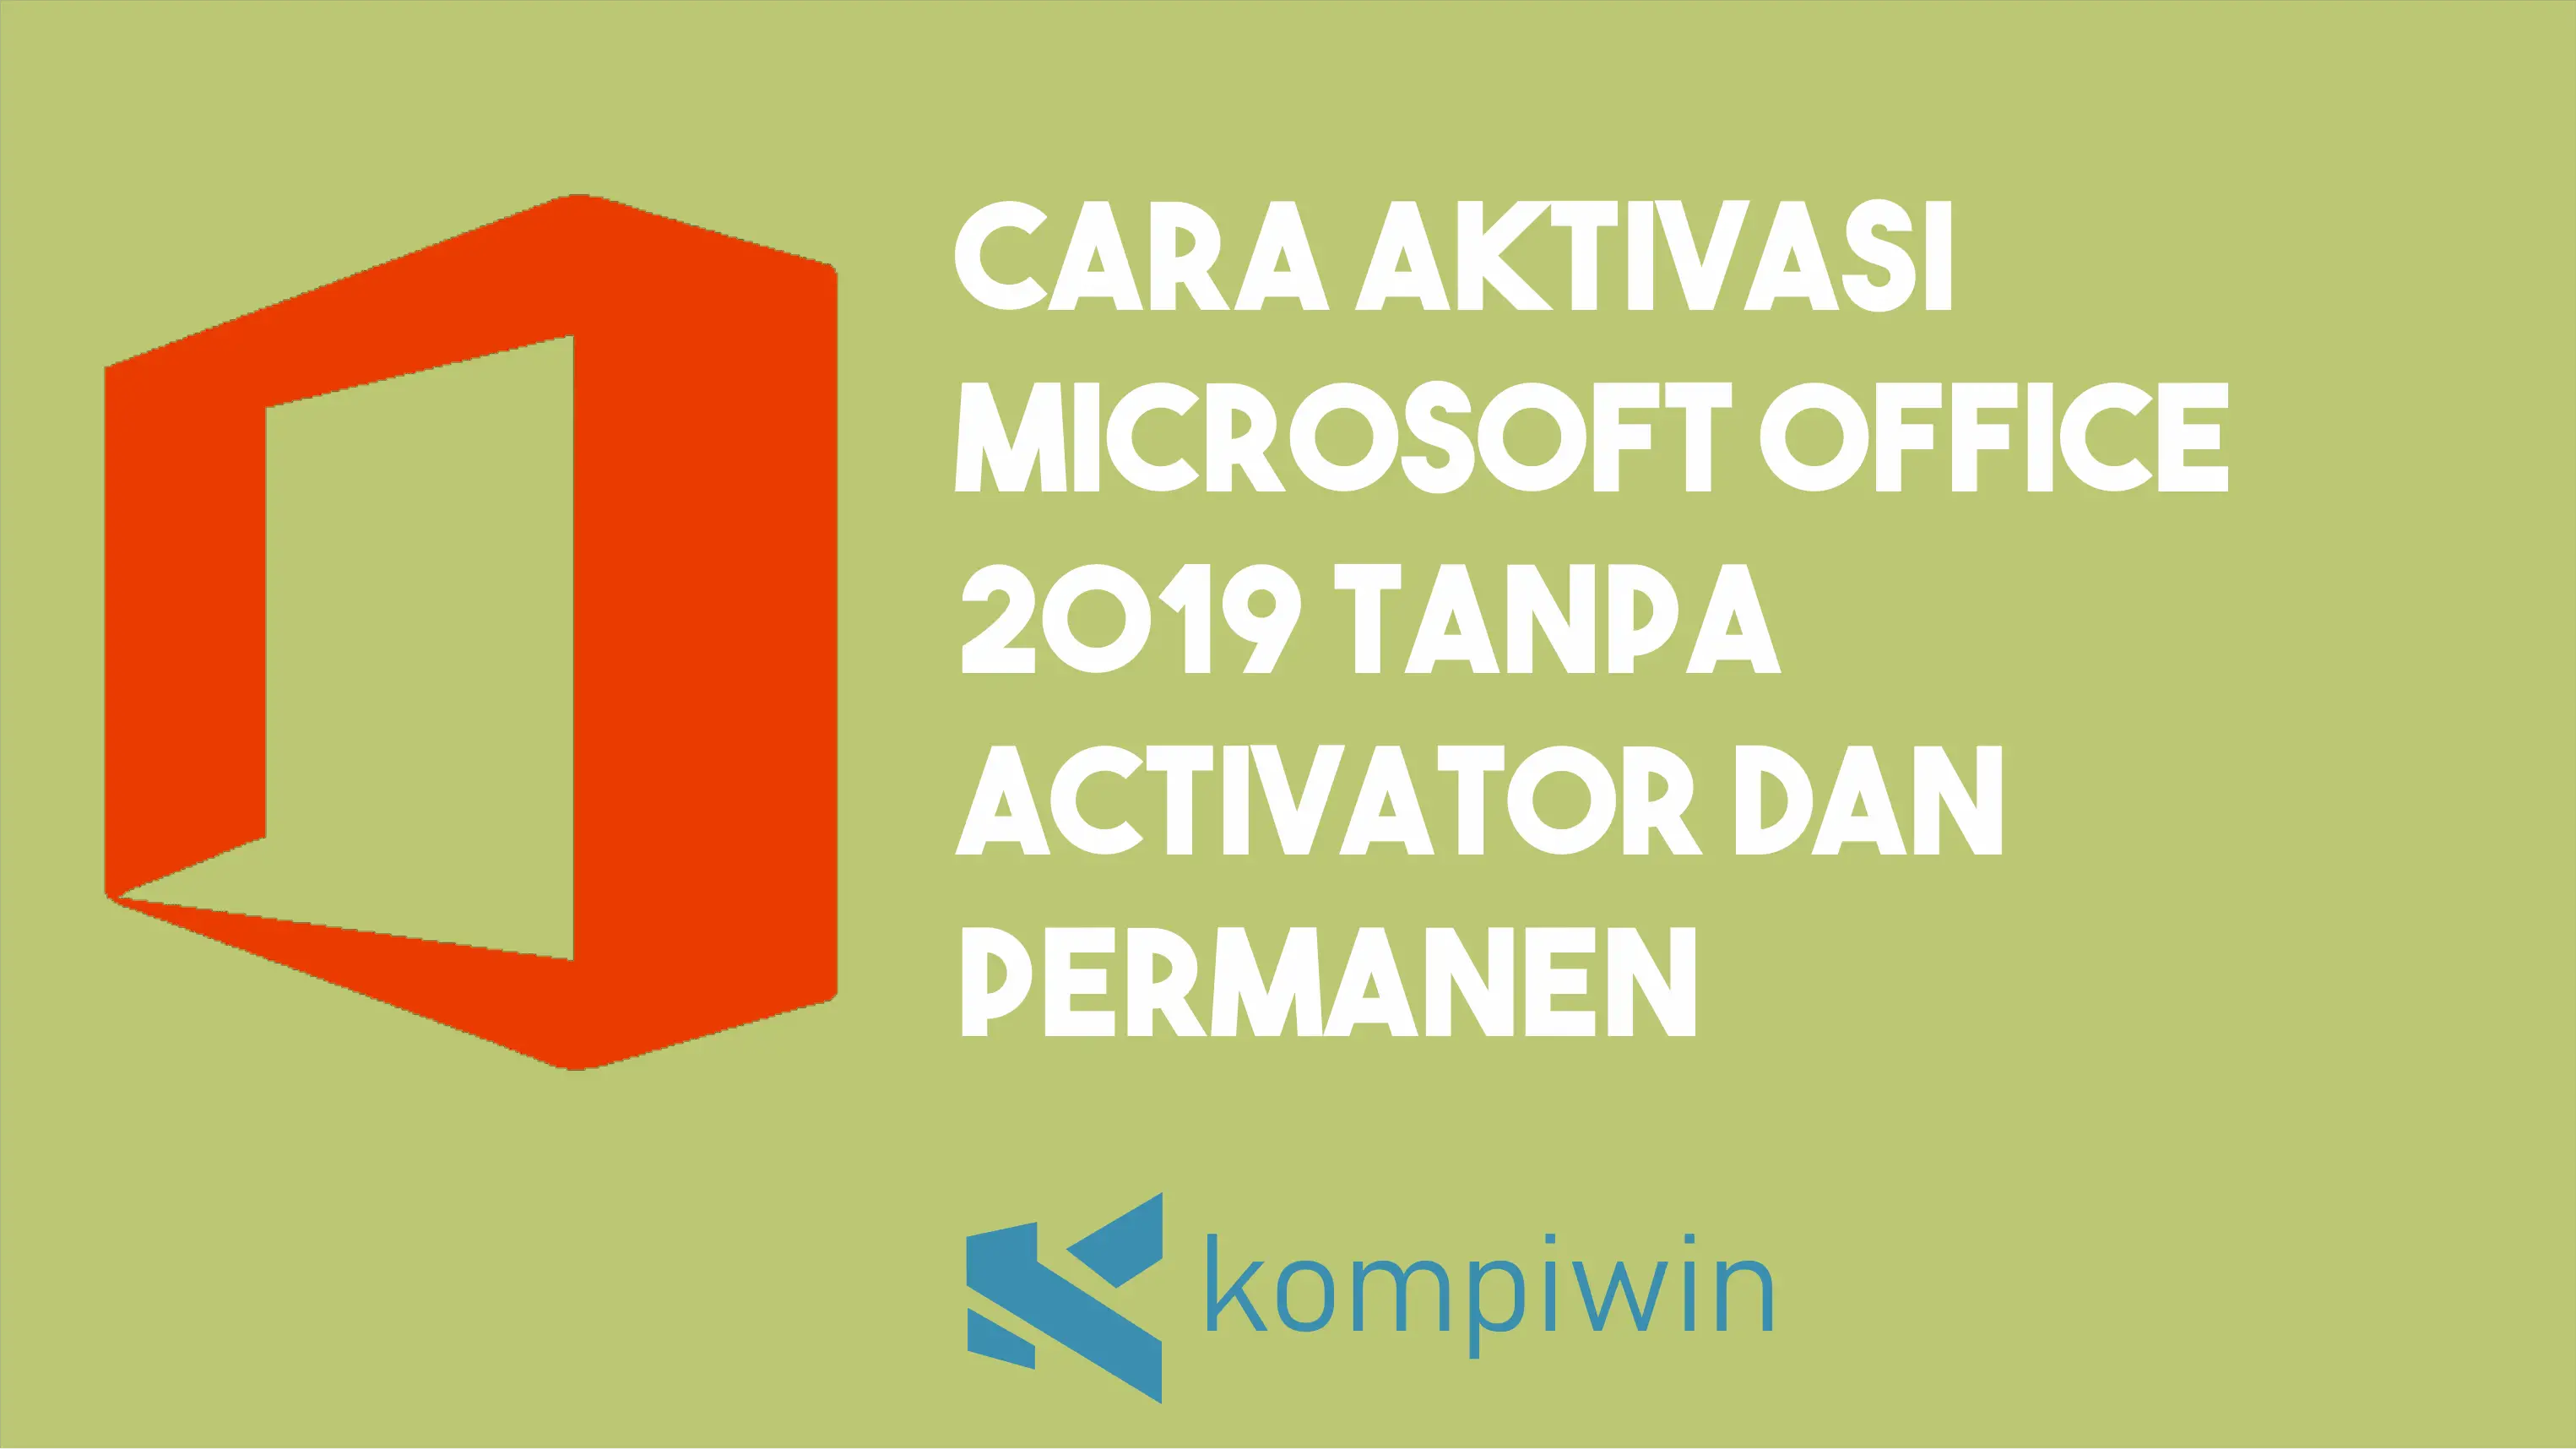 Cara Aktivasi Microsoft Office 2019 Tanpa Activator dan Permanen